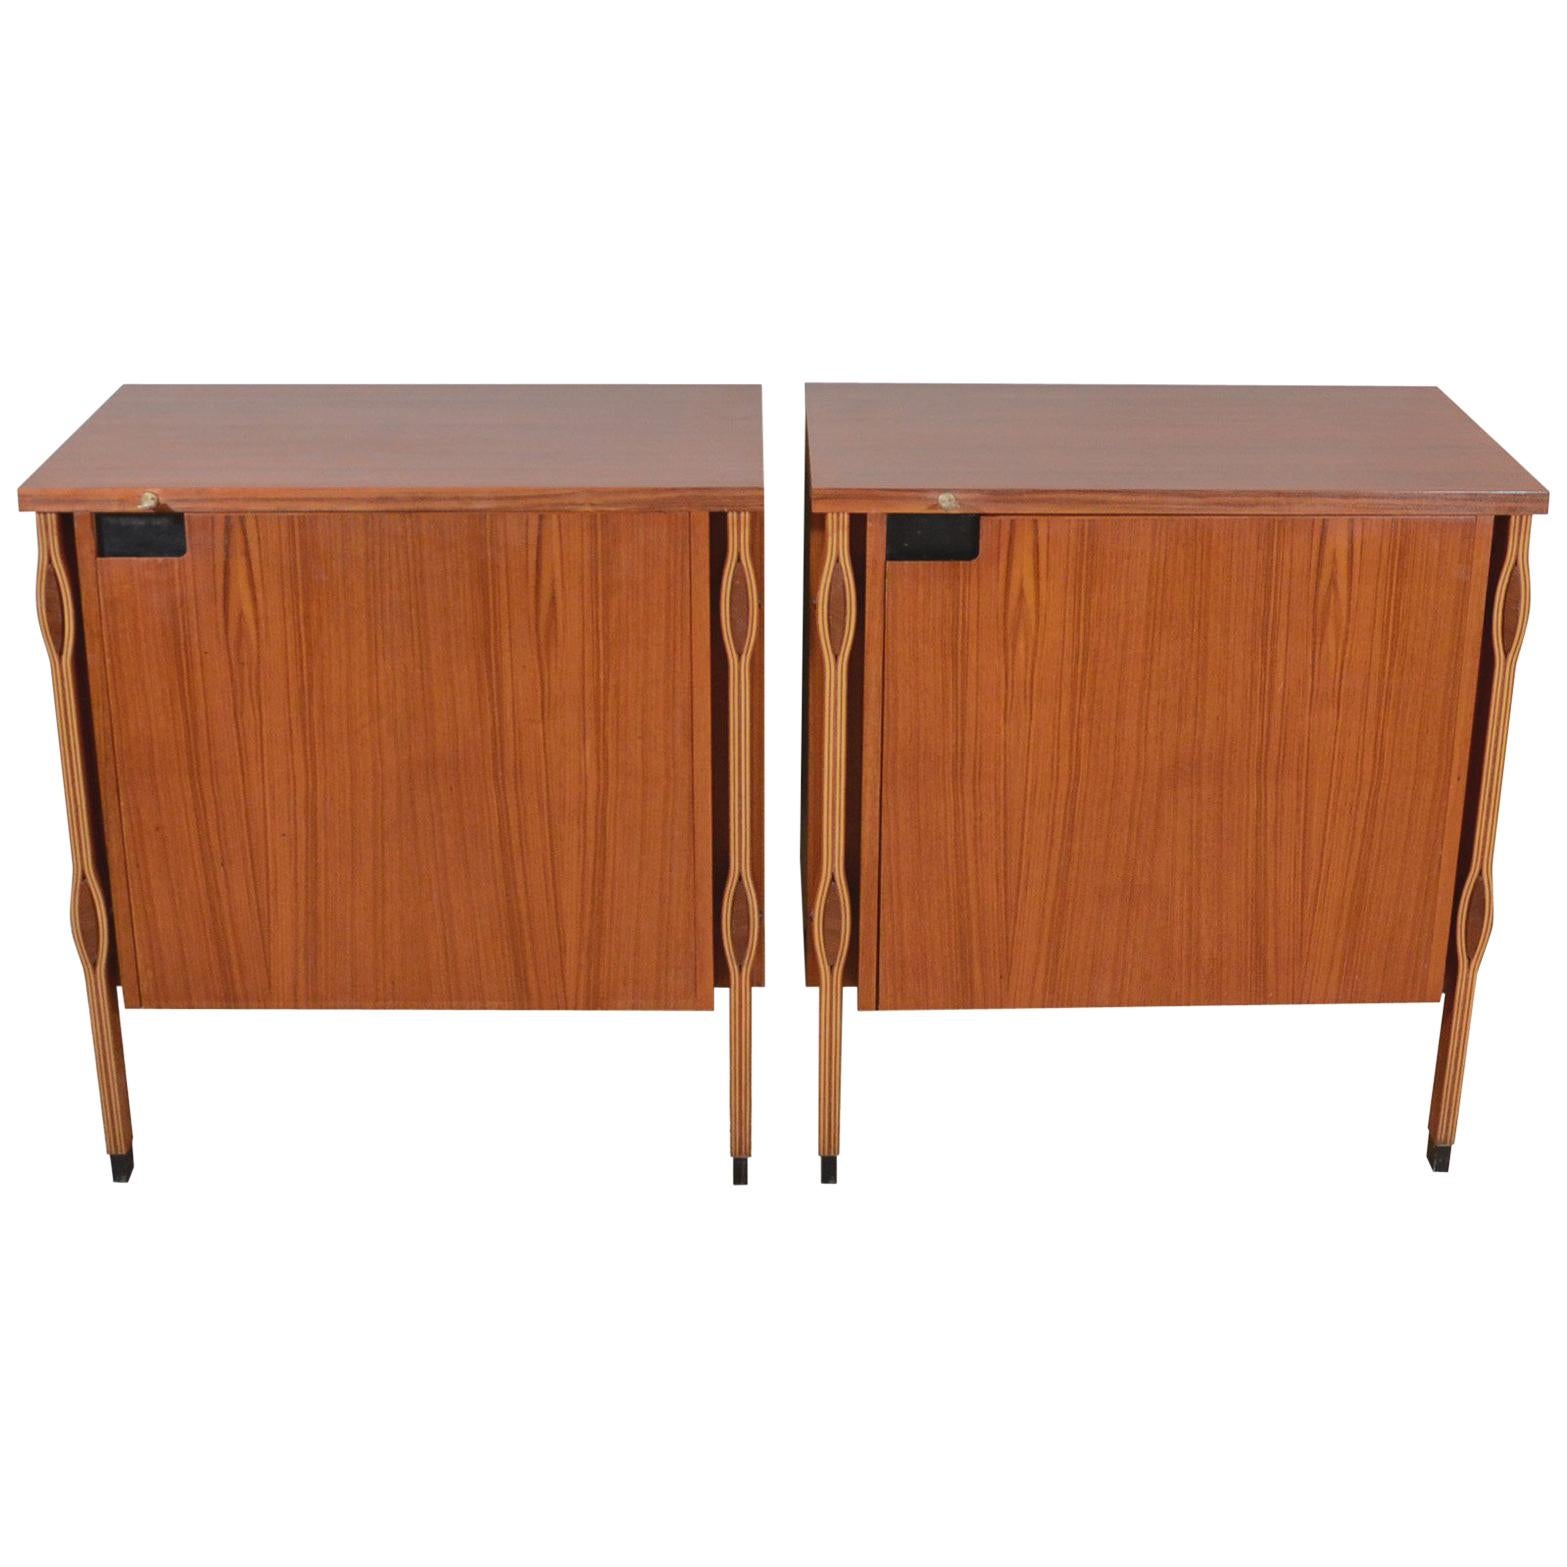 Ico & Luisa Parisi Taormina Teak Credenza Cabinets for MIM, 1958 For Sale